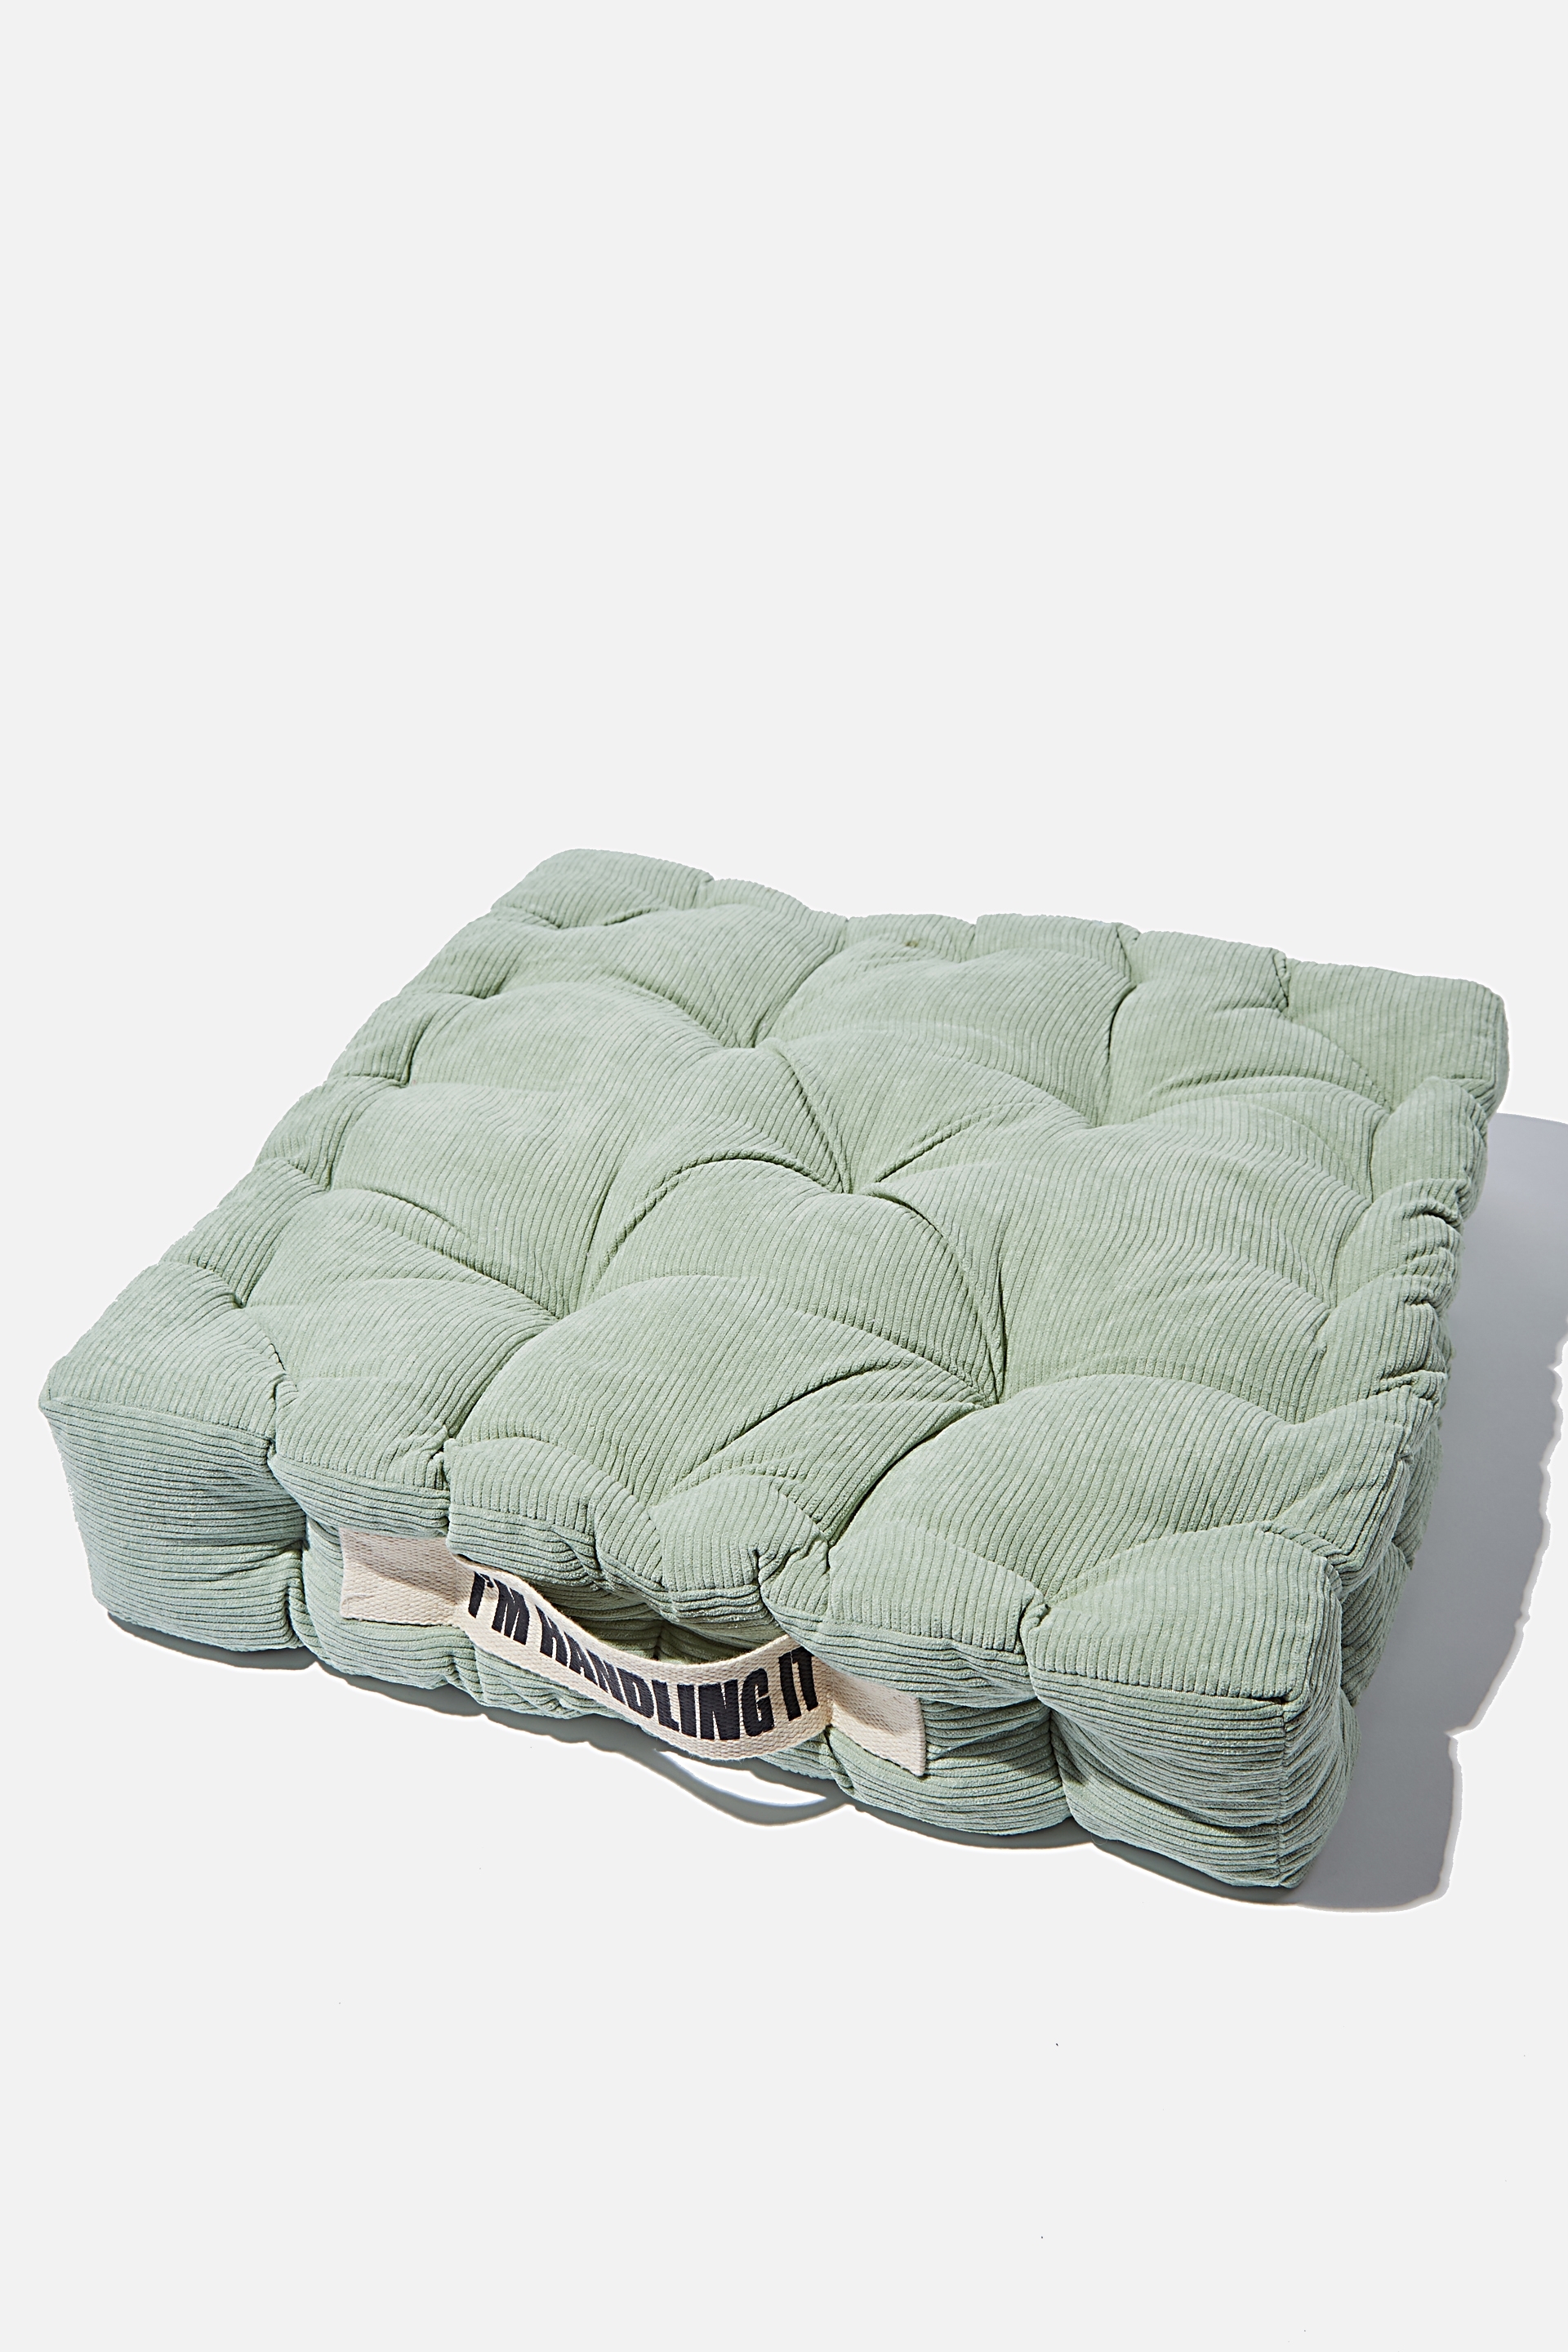 Typo - Floor Cushion - Gum leaf corduroy